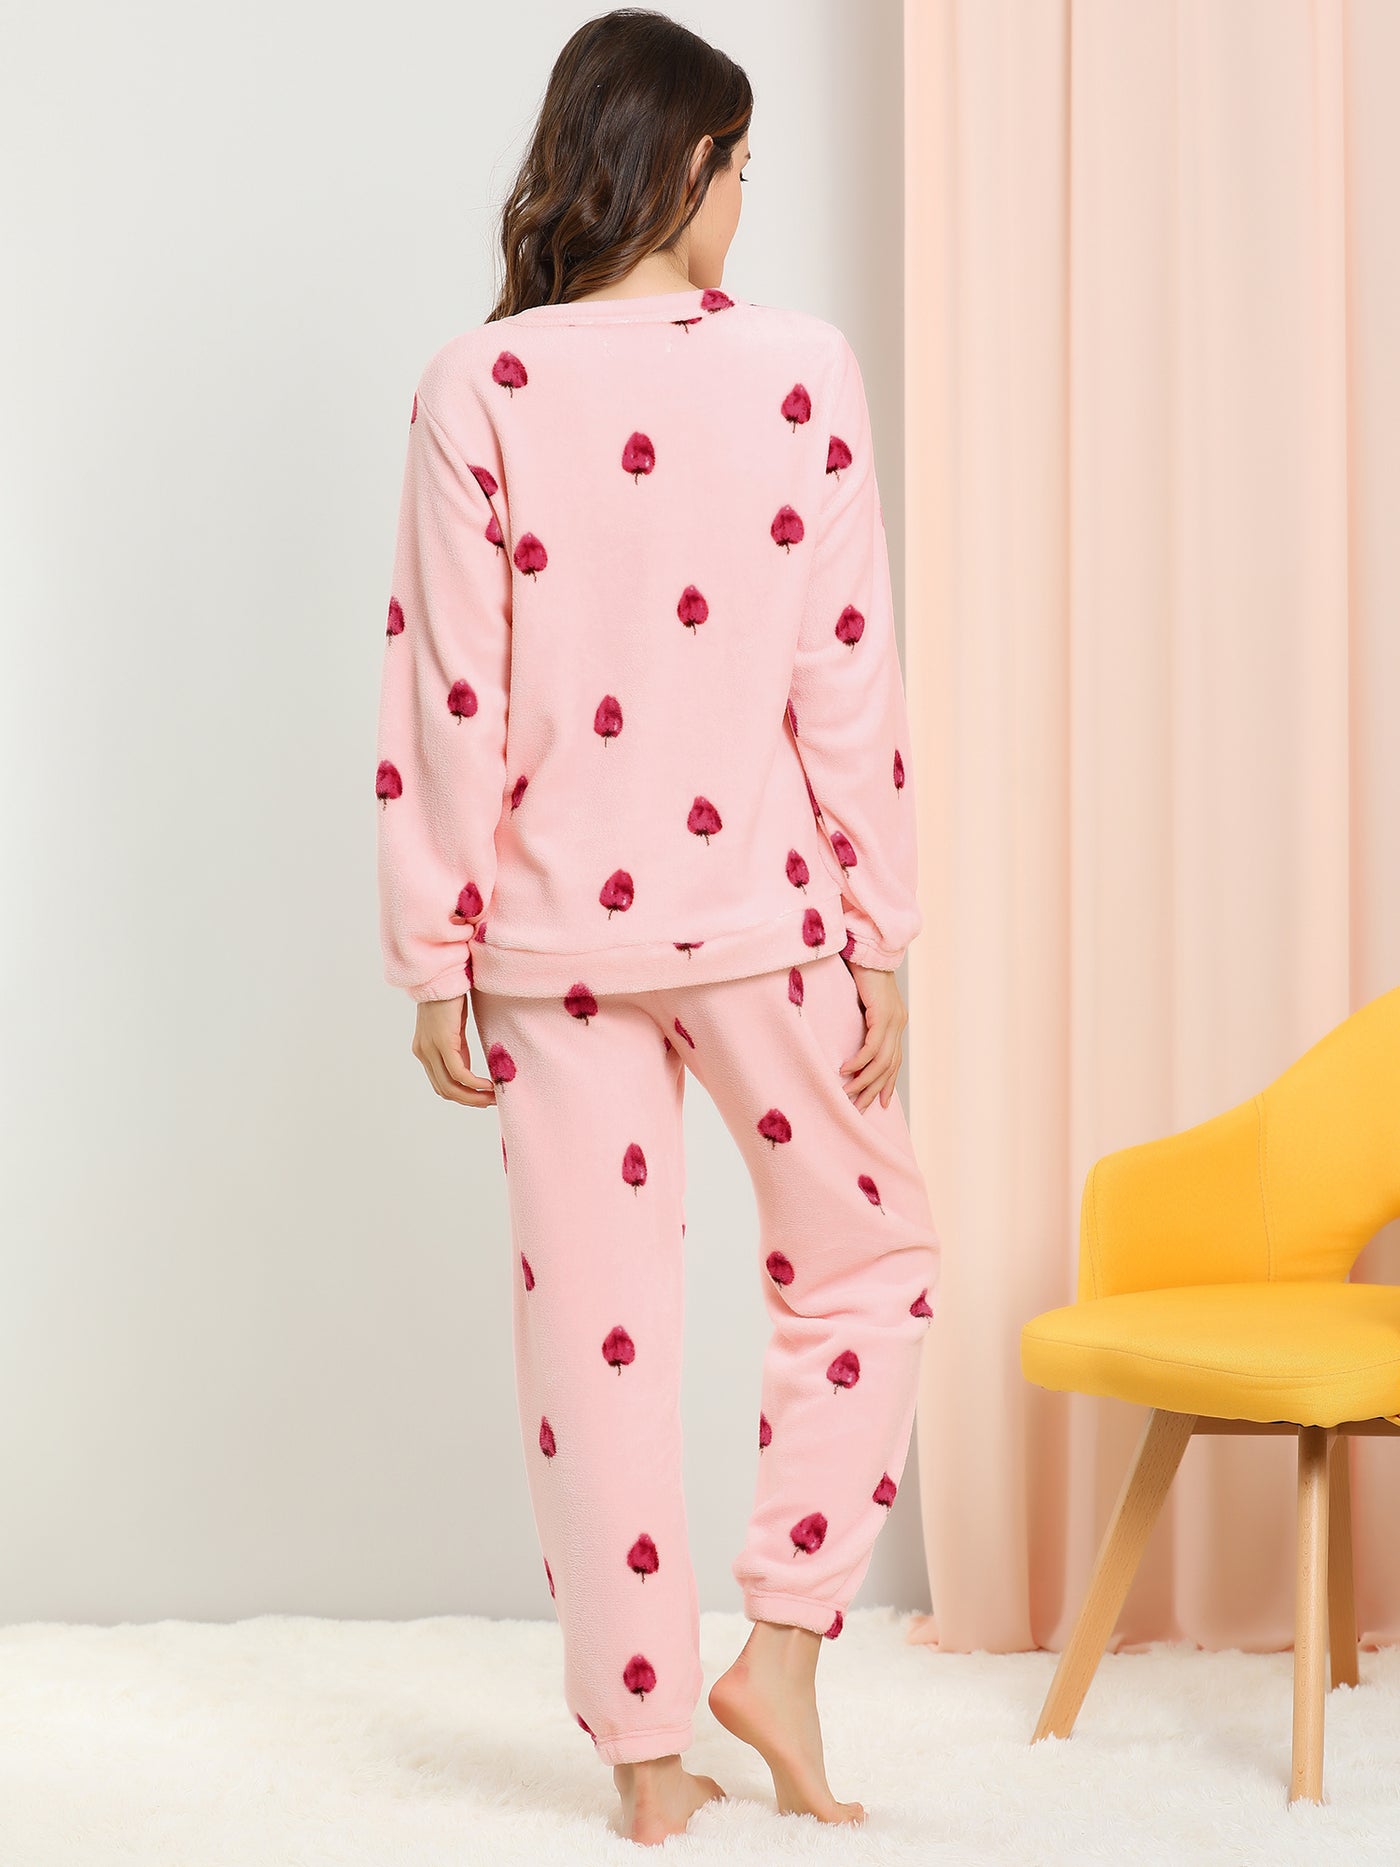 Allegra K Cute Printed Long Sleeve Nightwear Flannel Pajama Sets Sleepwears